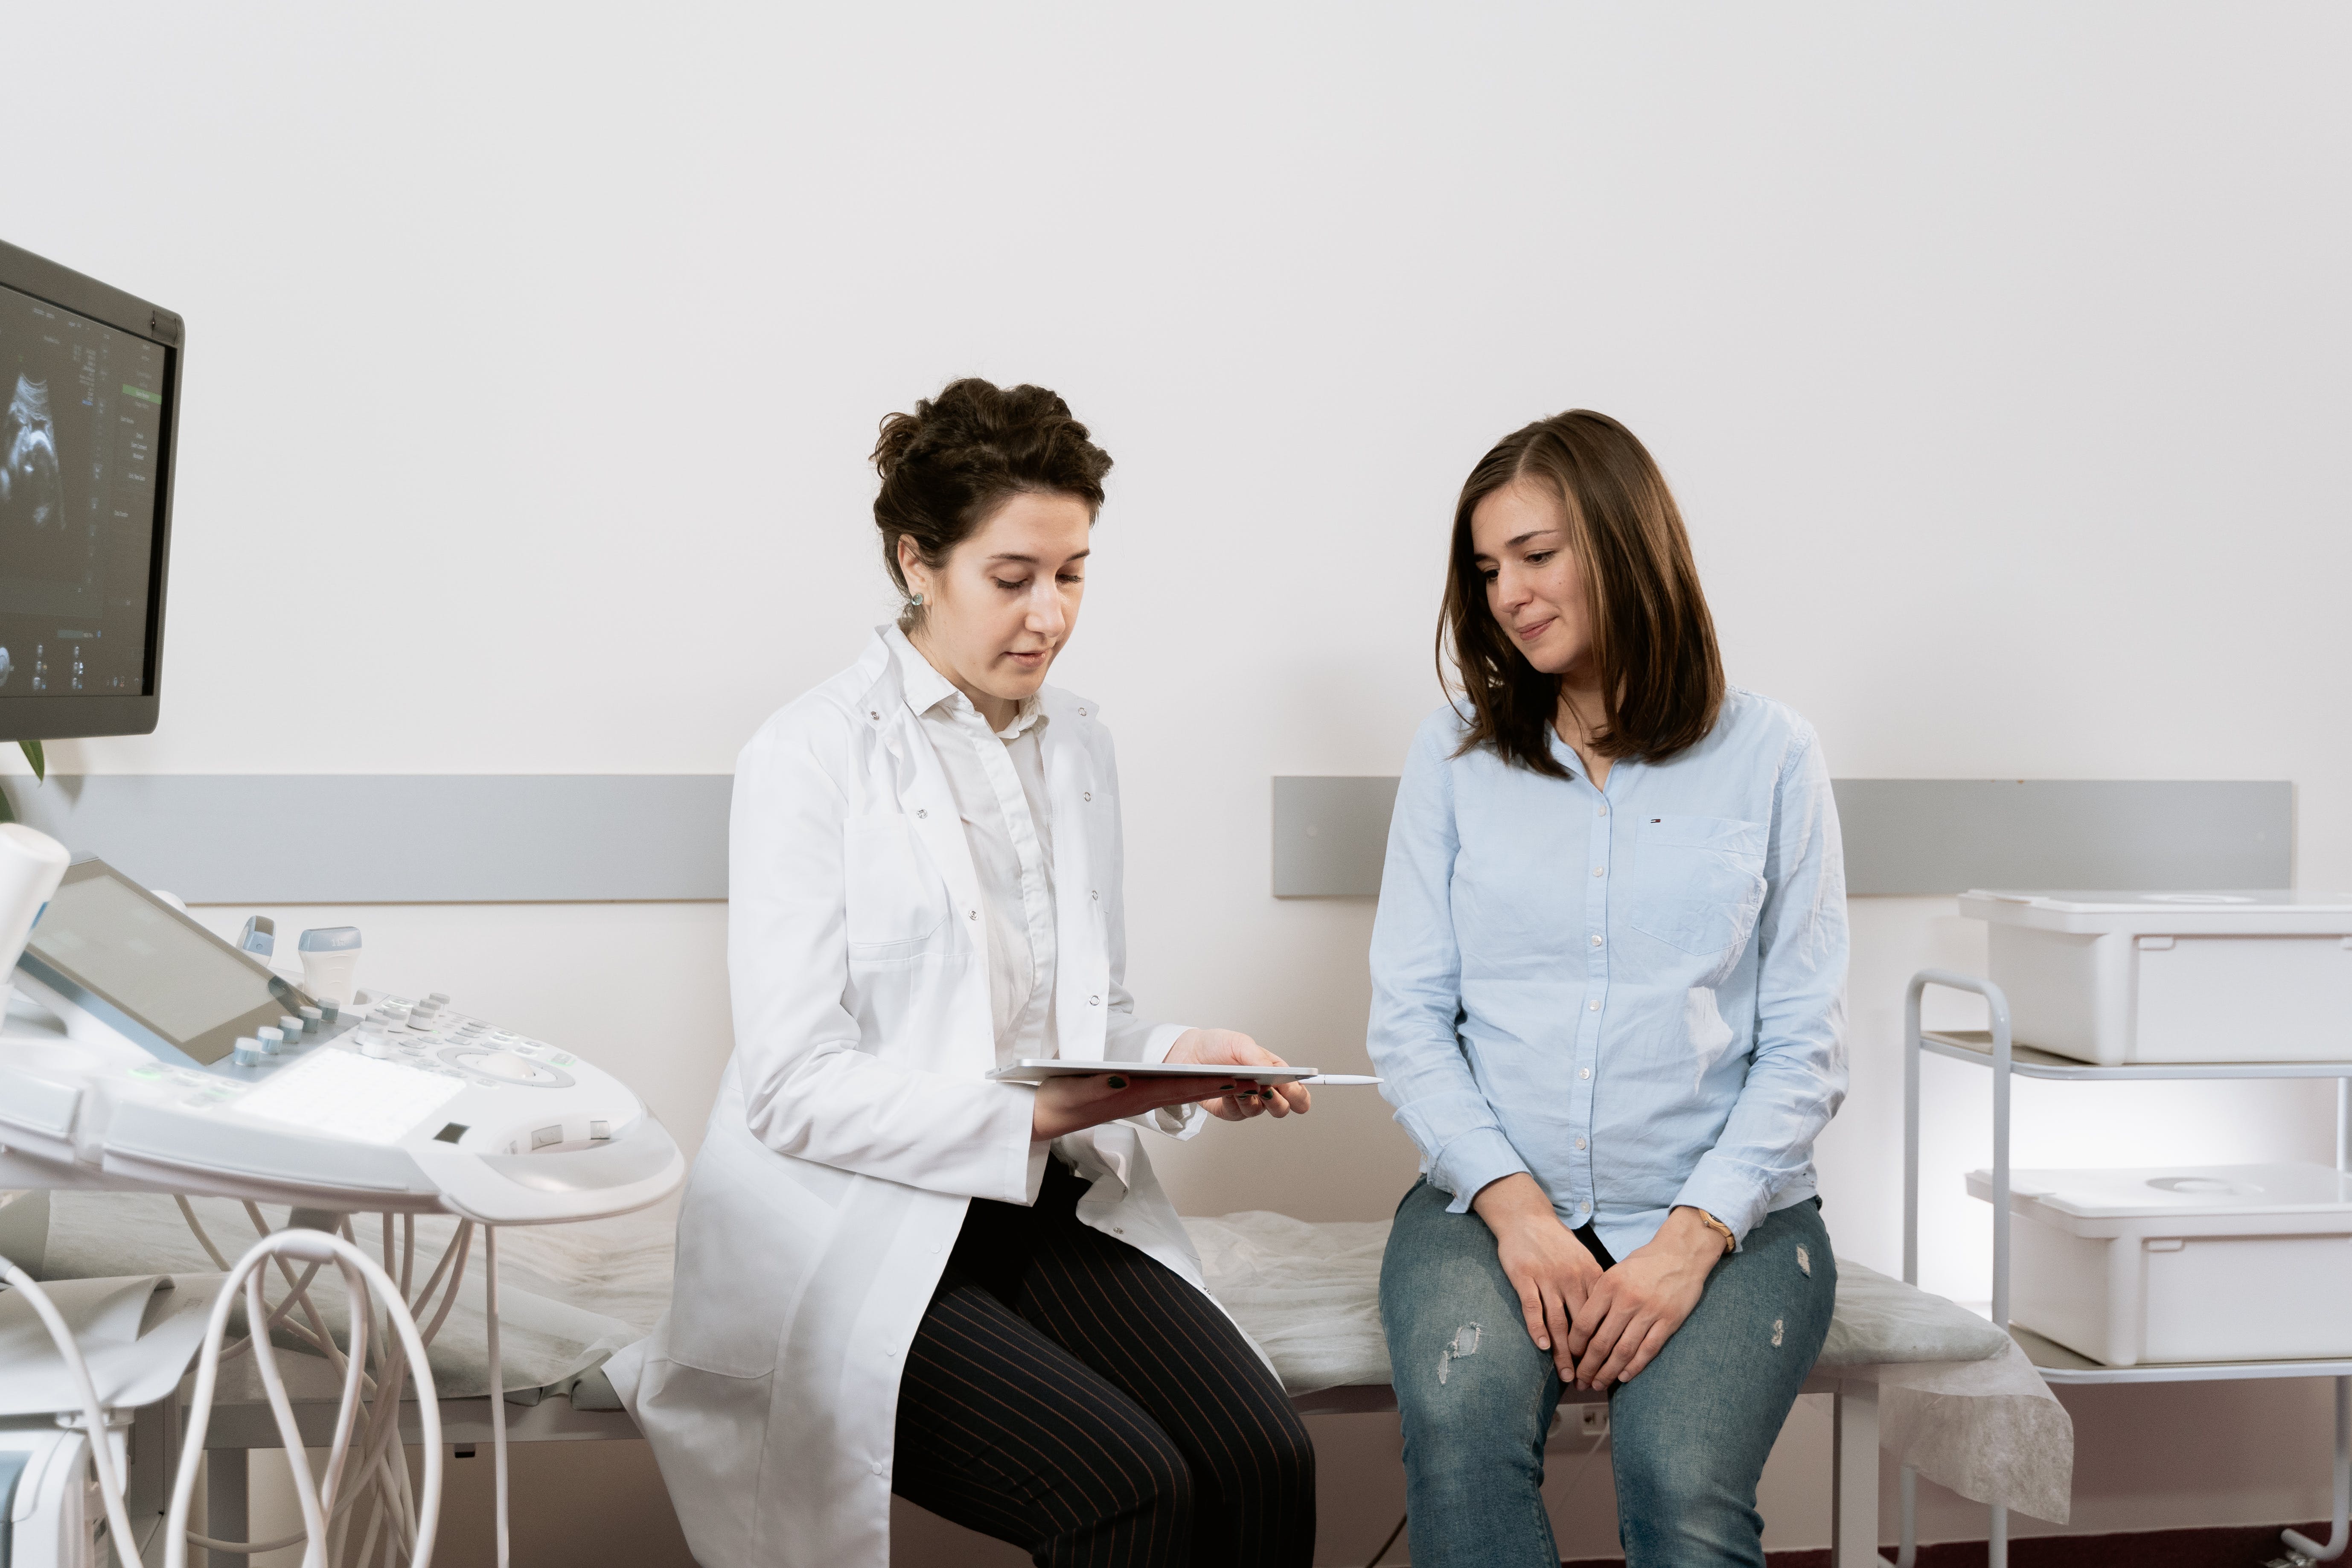 Una mujer embarazada en una consulta médica. | Fuente: Pexels